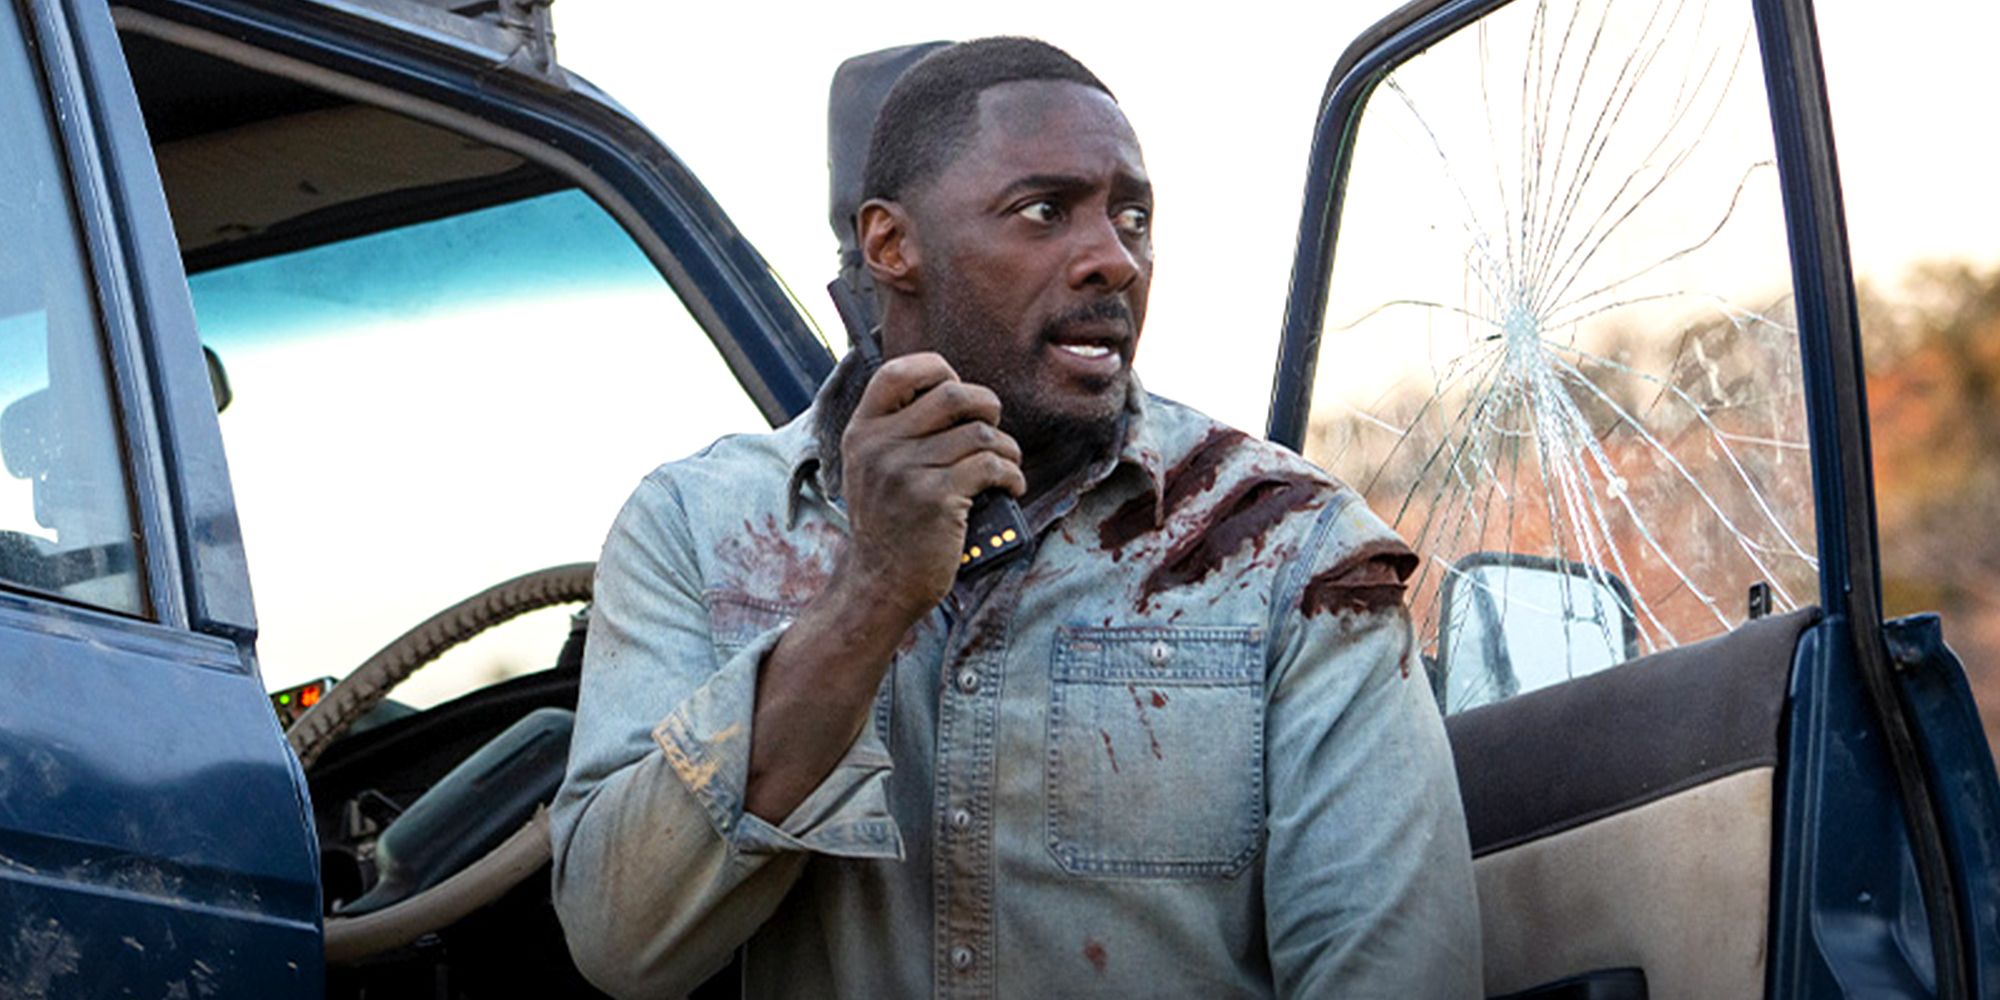 Idris Elba speaks into walkie talkie in the movie Beast